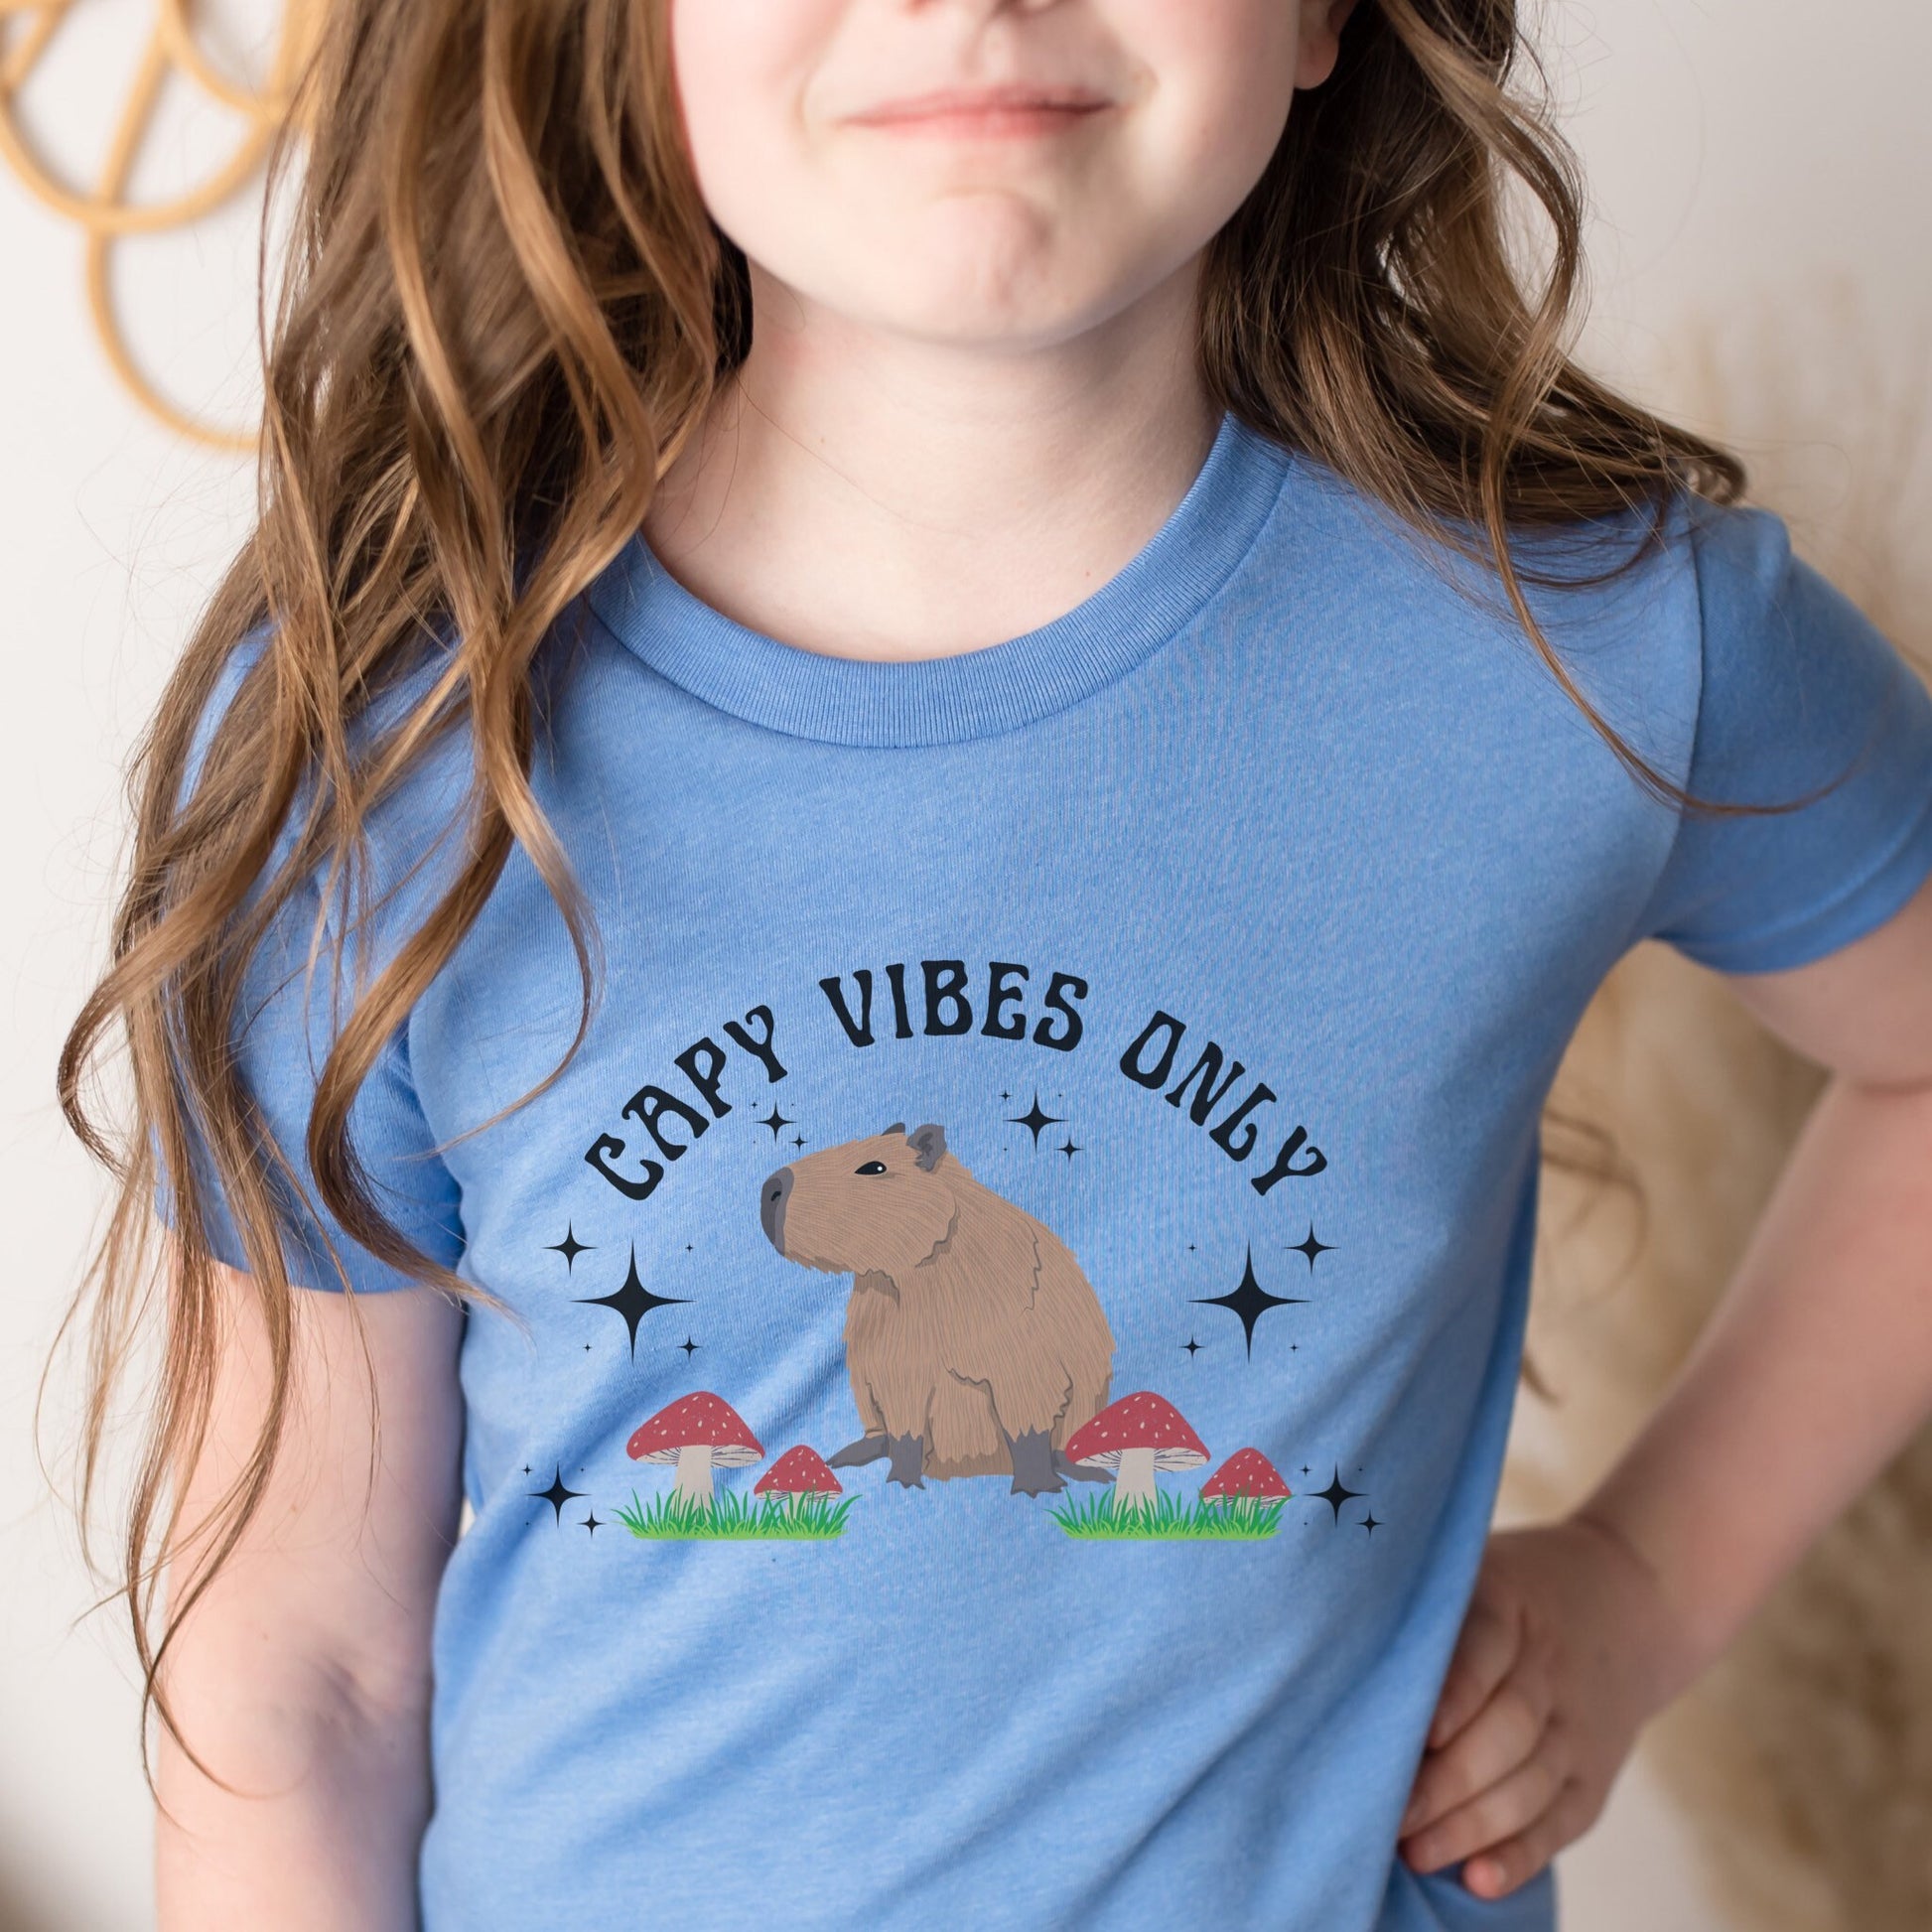 Capybara Shirt For Kids Retro Toddler Mushroom Shirt Cottagecore Clothes Capy Vibes Capybara Gift Kids Youth Capybara Shirt Capy Shirt Girl